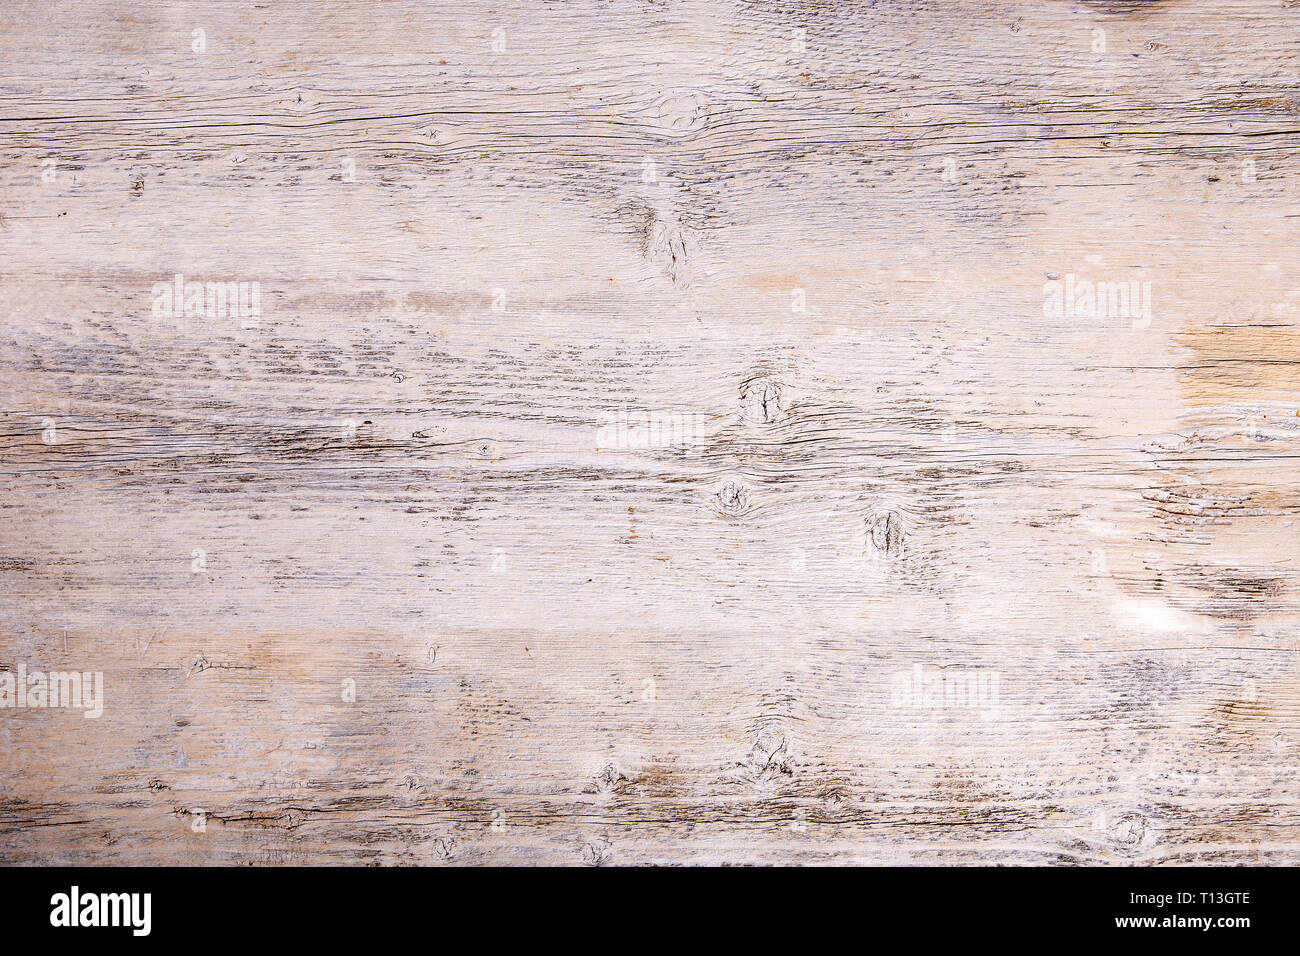 Sbucciare la vernice su un vecchio pavimento in legno. Bianco sullo sfondo di legno Foto Stock